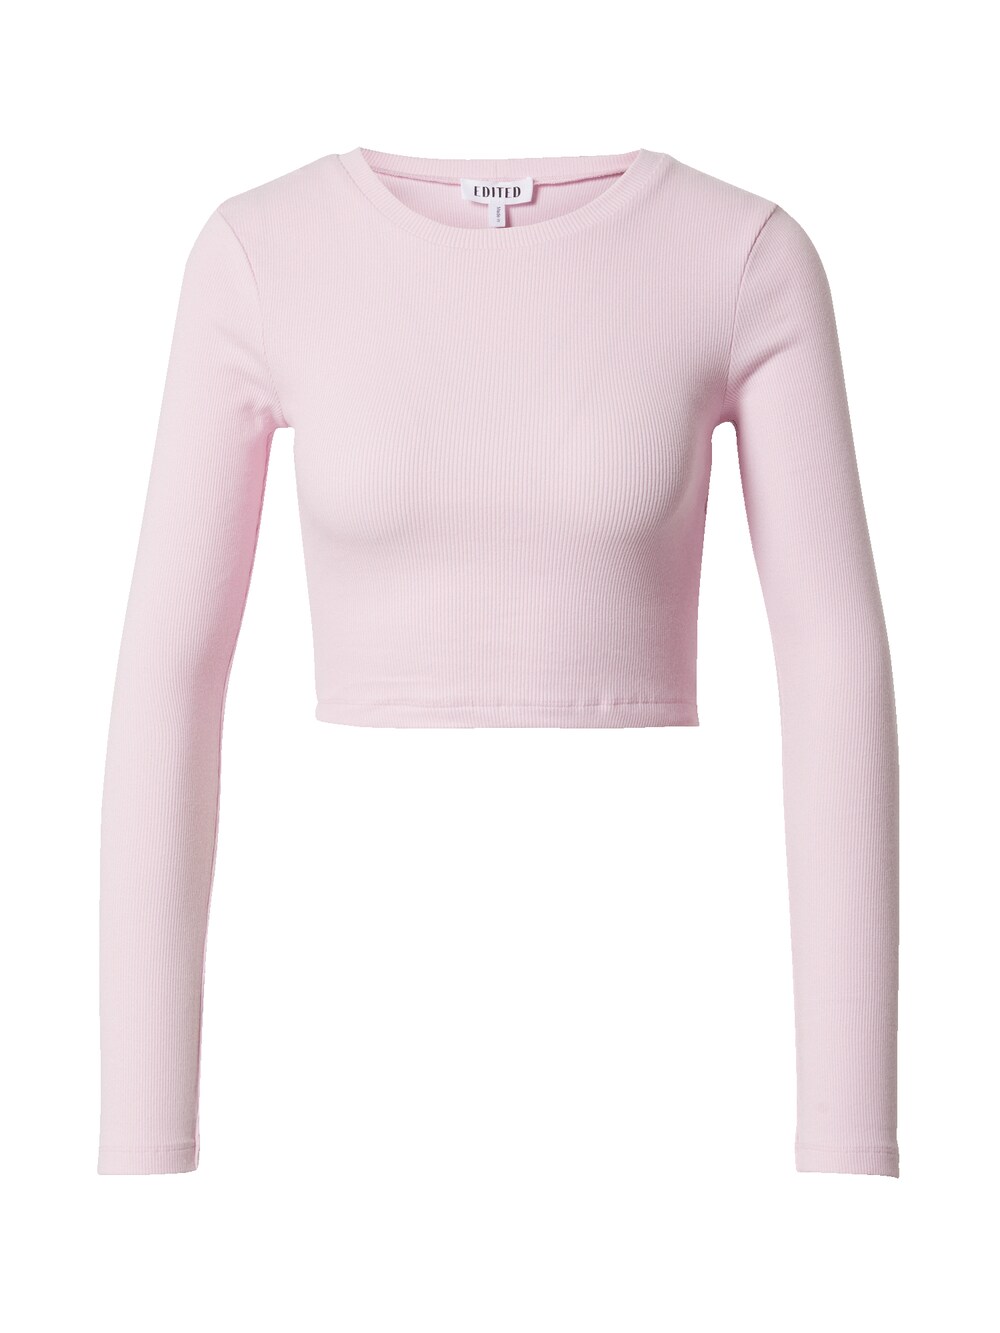 Рубашка EDITED Oxana, розовый рубашка edited oxana карамель